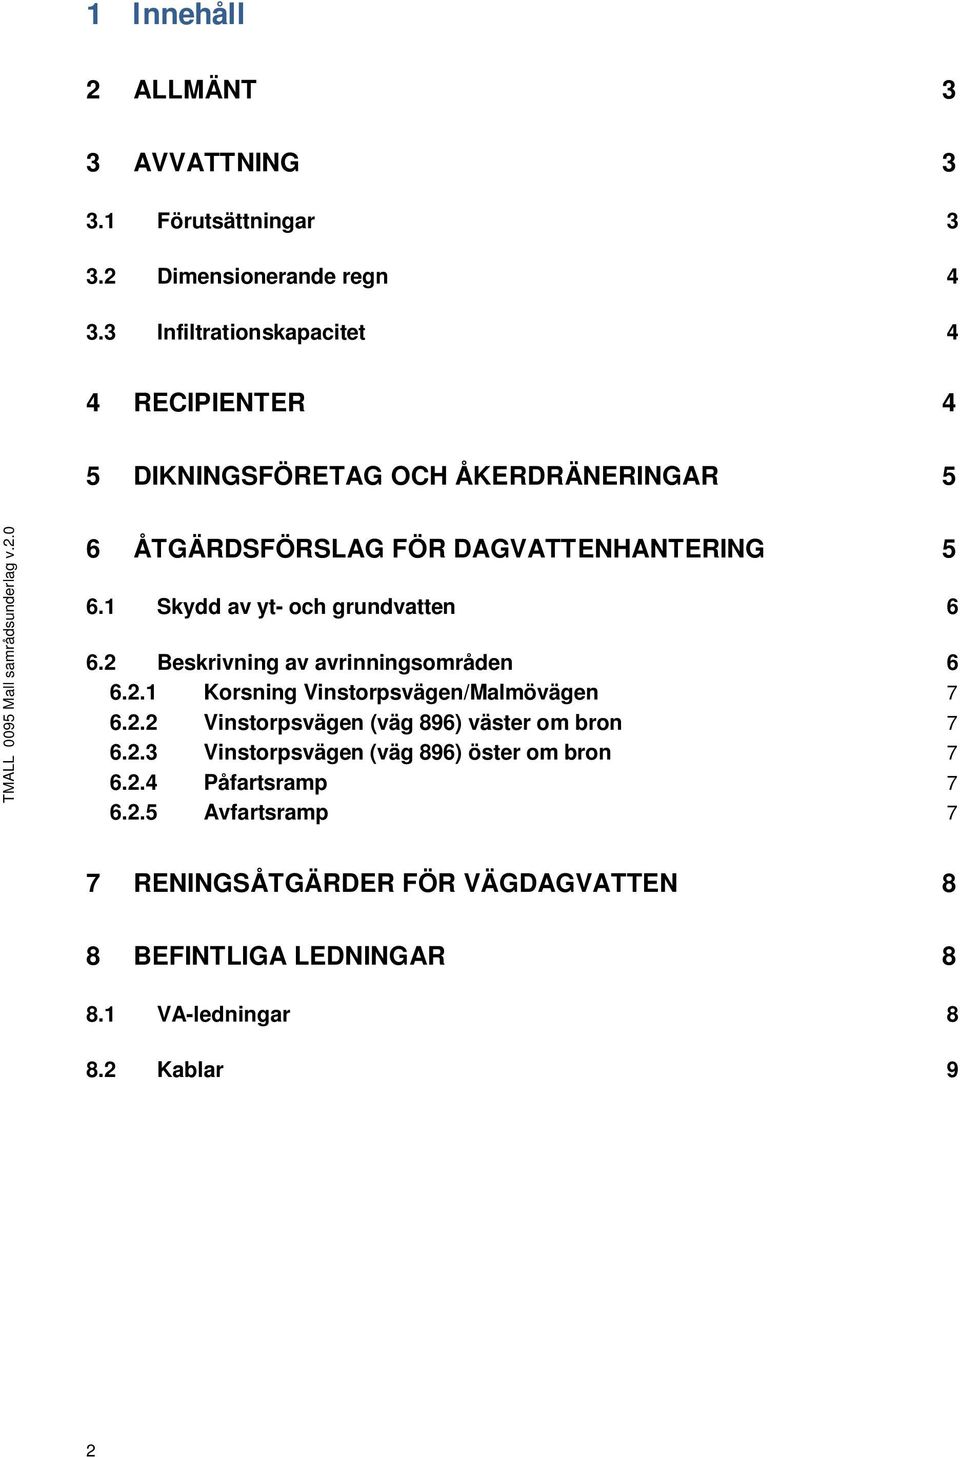 0 6 ÅTGÄRDSFÖRSLAG FÖR DAGVATTENHANTERING 5 6.1 Skydd av yt- och grundvatten 6 6.2 Beskrivning av avrinningsområden 6 6.2.1 Korsning Vinstorpsvägen/Malmövägen 7 6.